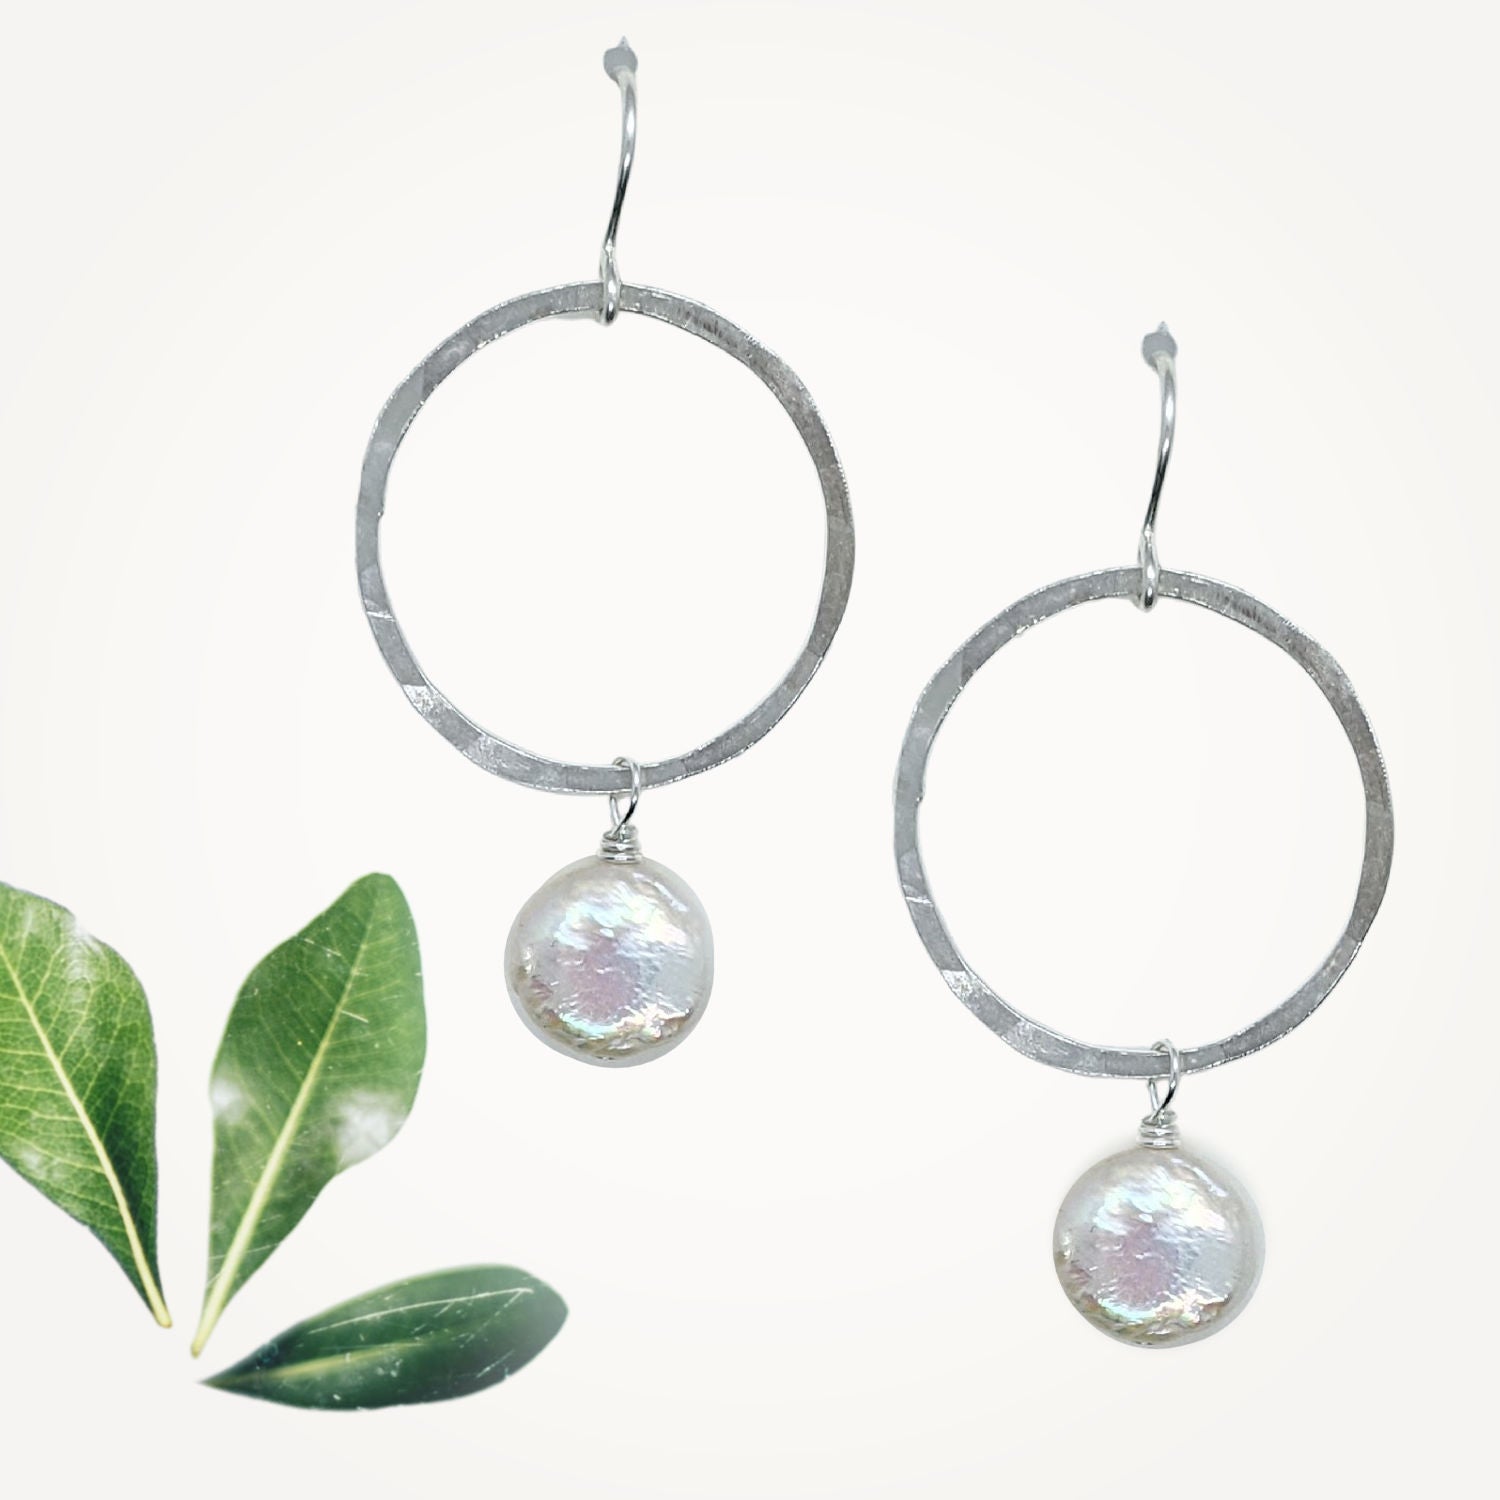 Meridian Earrings • Coin Pearl